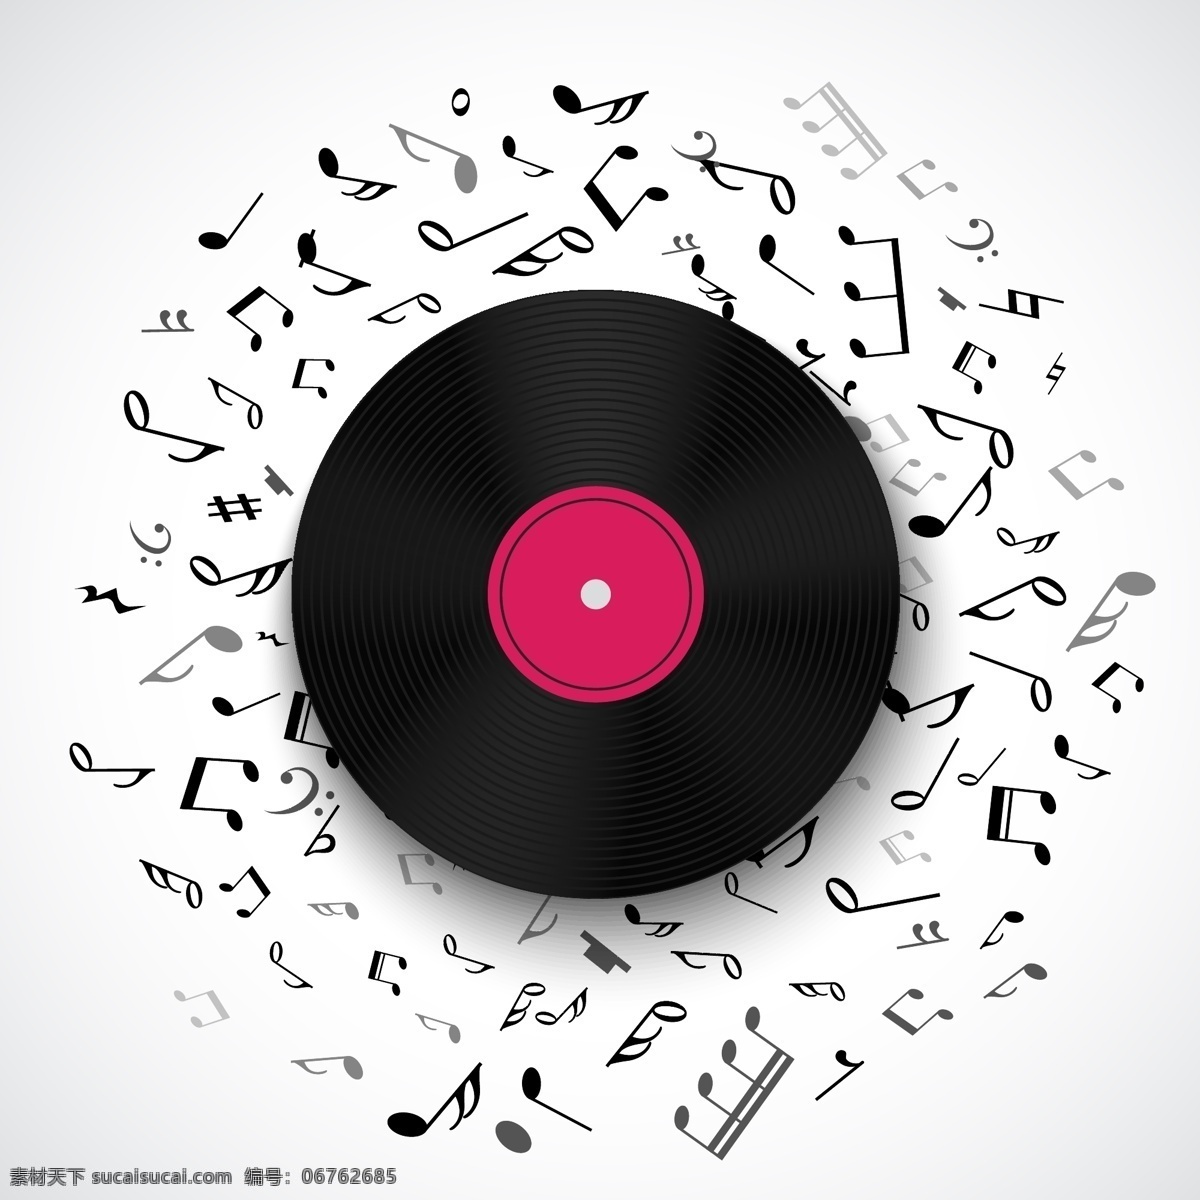 粉色 唱片 音乐节 海报 宣传 矢量 白底 现代 简约 音碟 碟片 背景 黑胶 cd 封面 矢量图